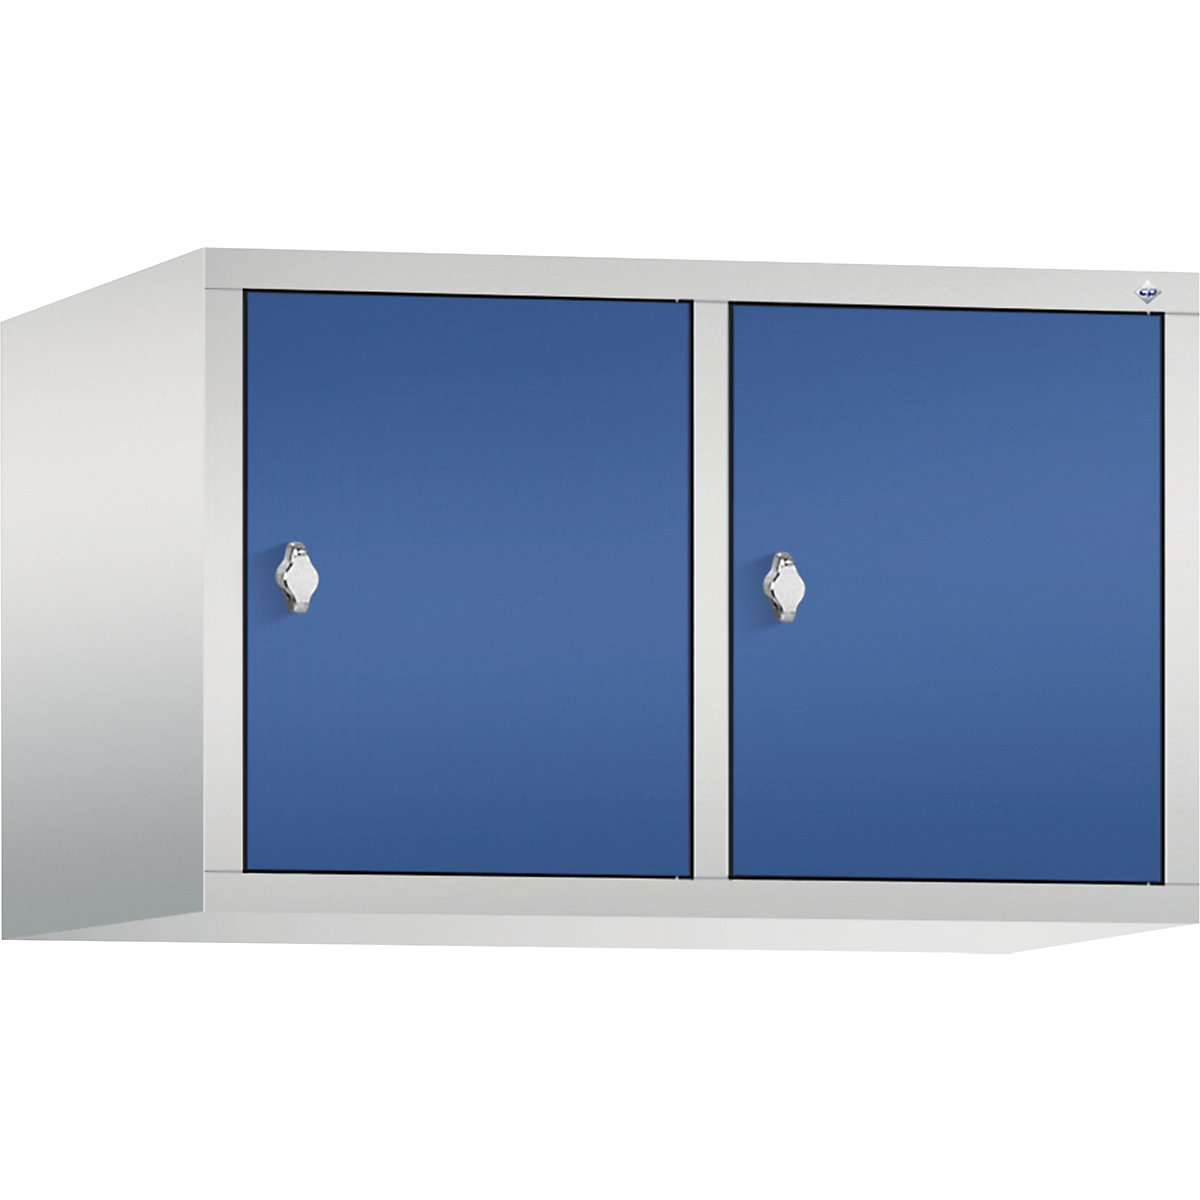 C+P – Altillo CLASSIC, 2 compartimentos, anchura de compartimento 400 mm, gris luminoso / azul genciana